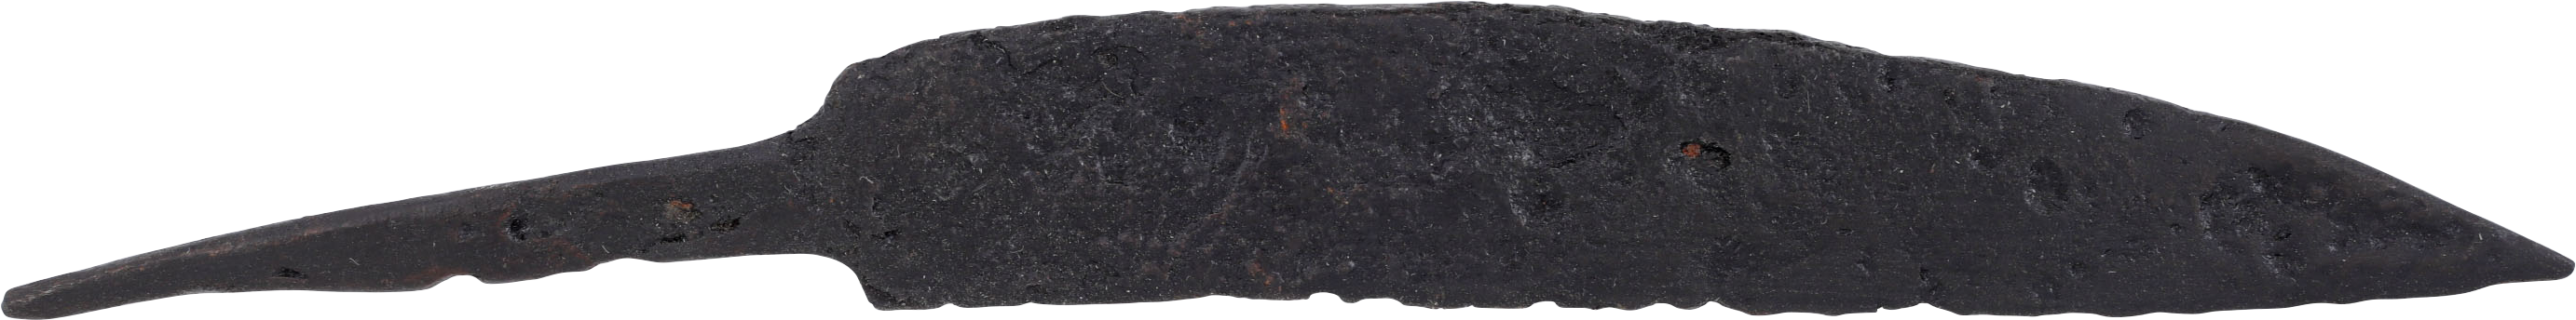 GOOD LARGE CELTIC SIDE KNIFE, 450-50 BC